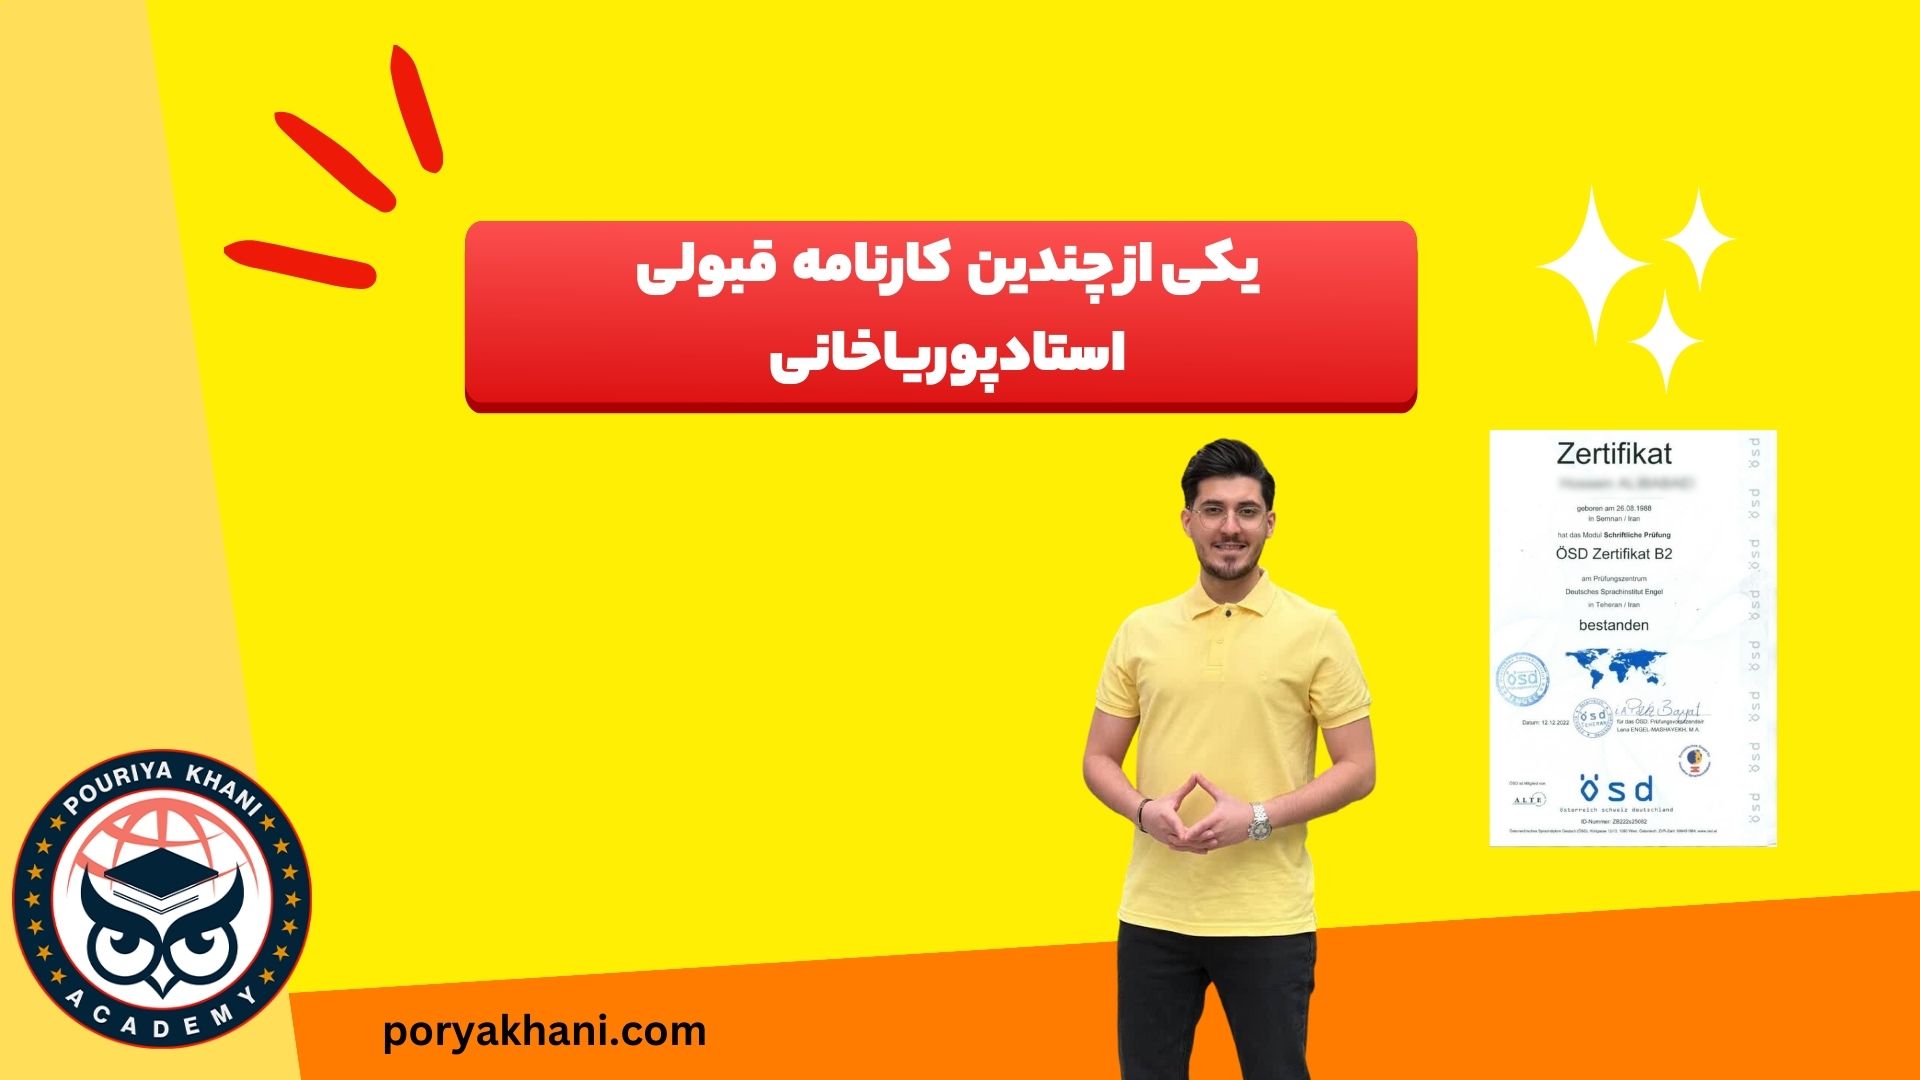 نتایج شرکت در آکادمی پوریا خانی